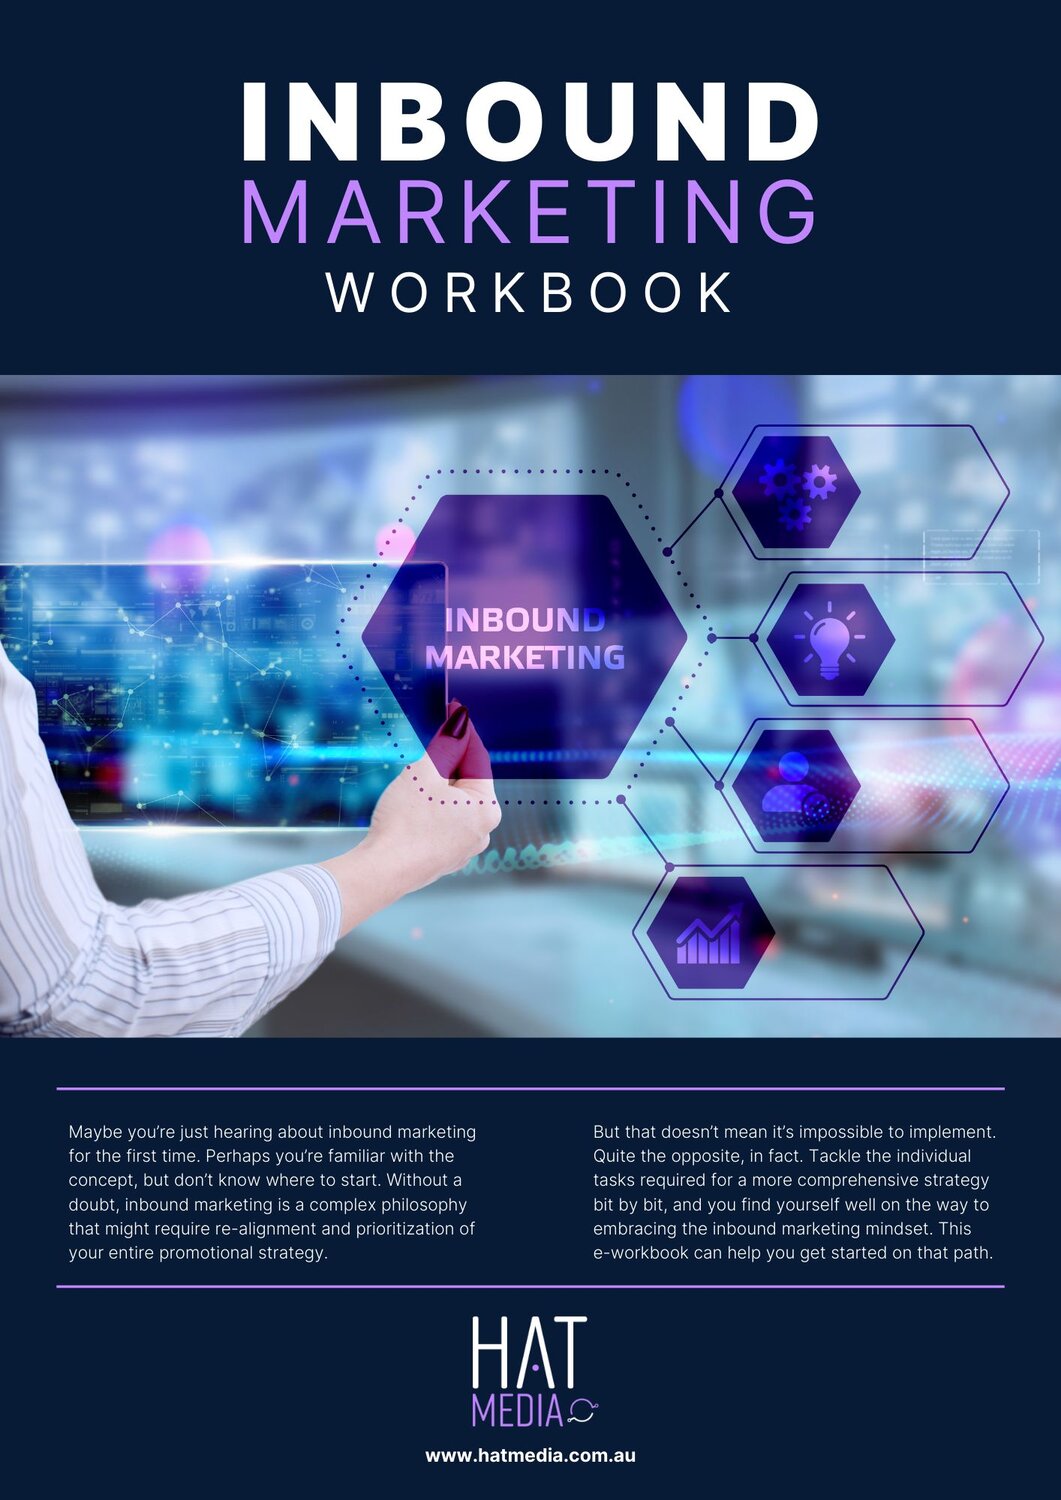 Download the Inbound Marketing Workbook